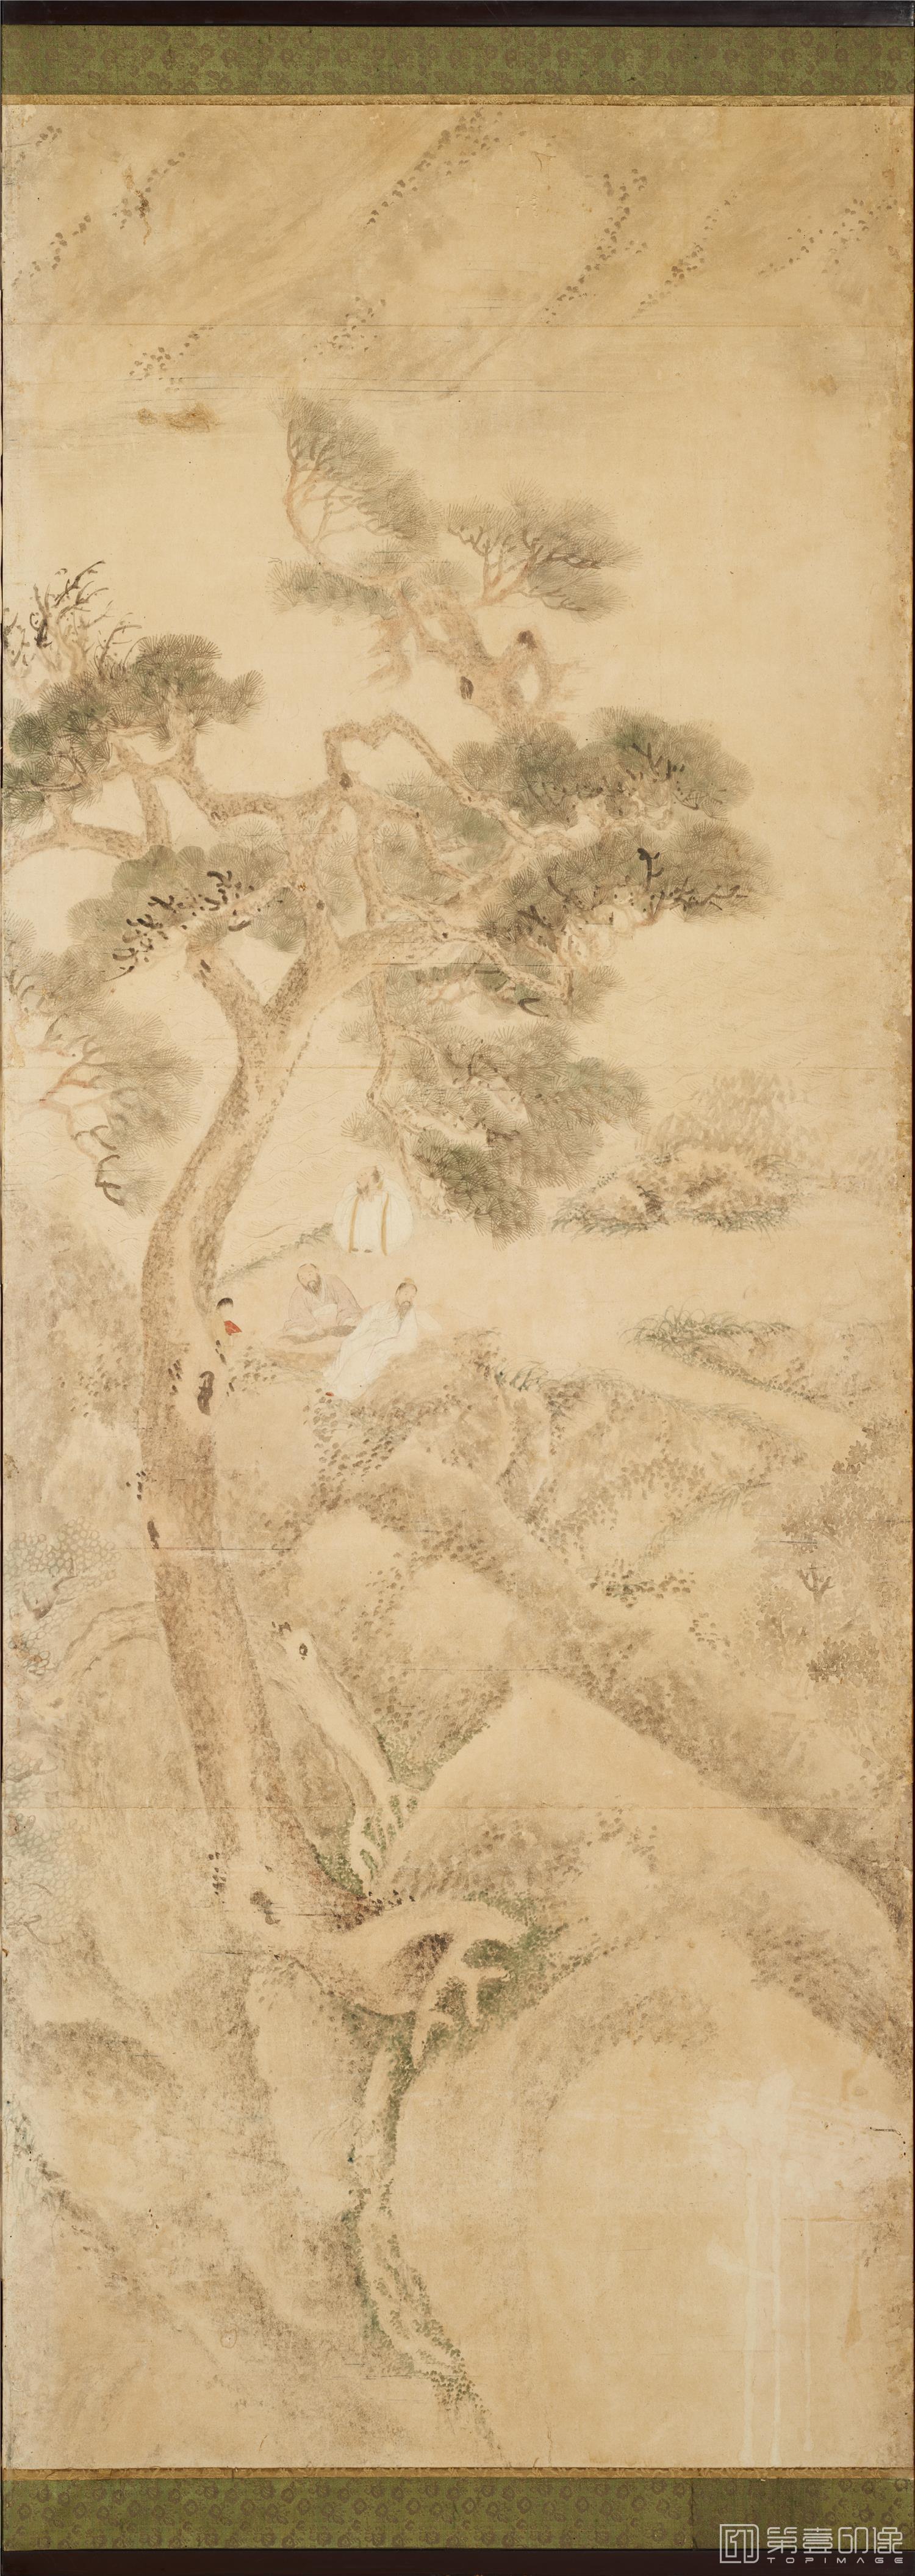 日本-江户时代-彭城百川-山水图屏风-160x358cm-第二屏分轴-03-水彩画 